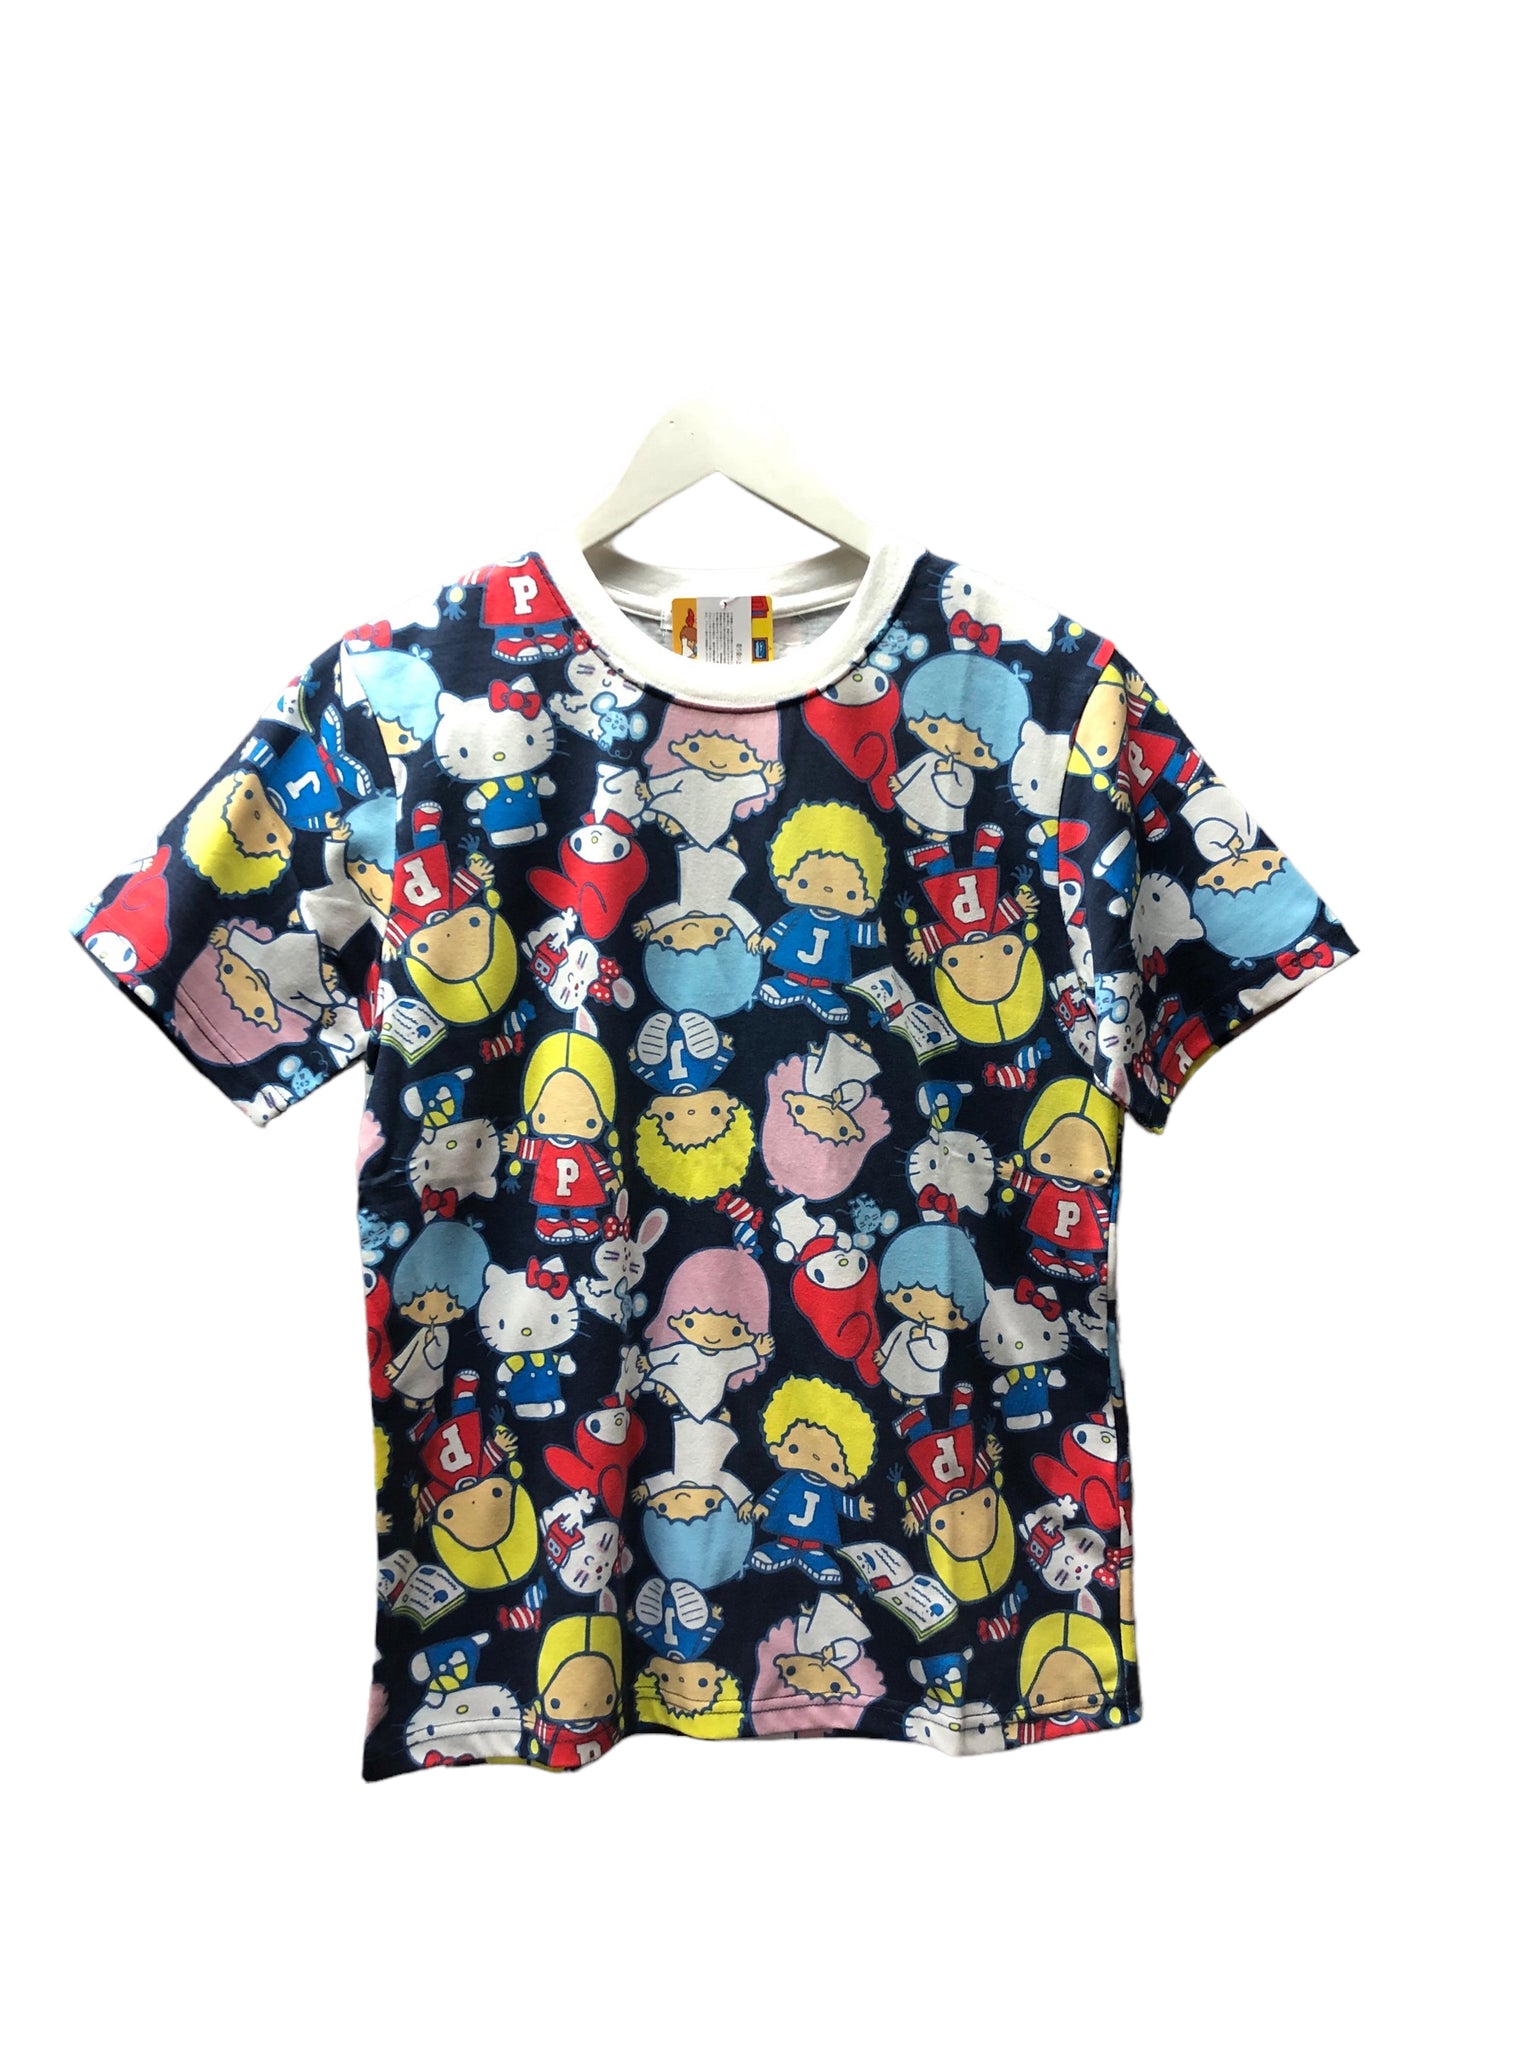 Sanrio Allstar Tshirt